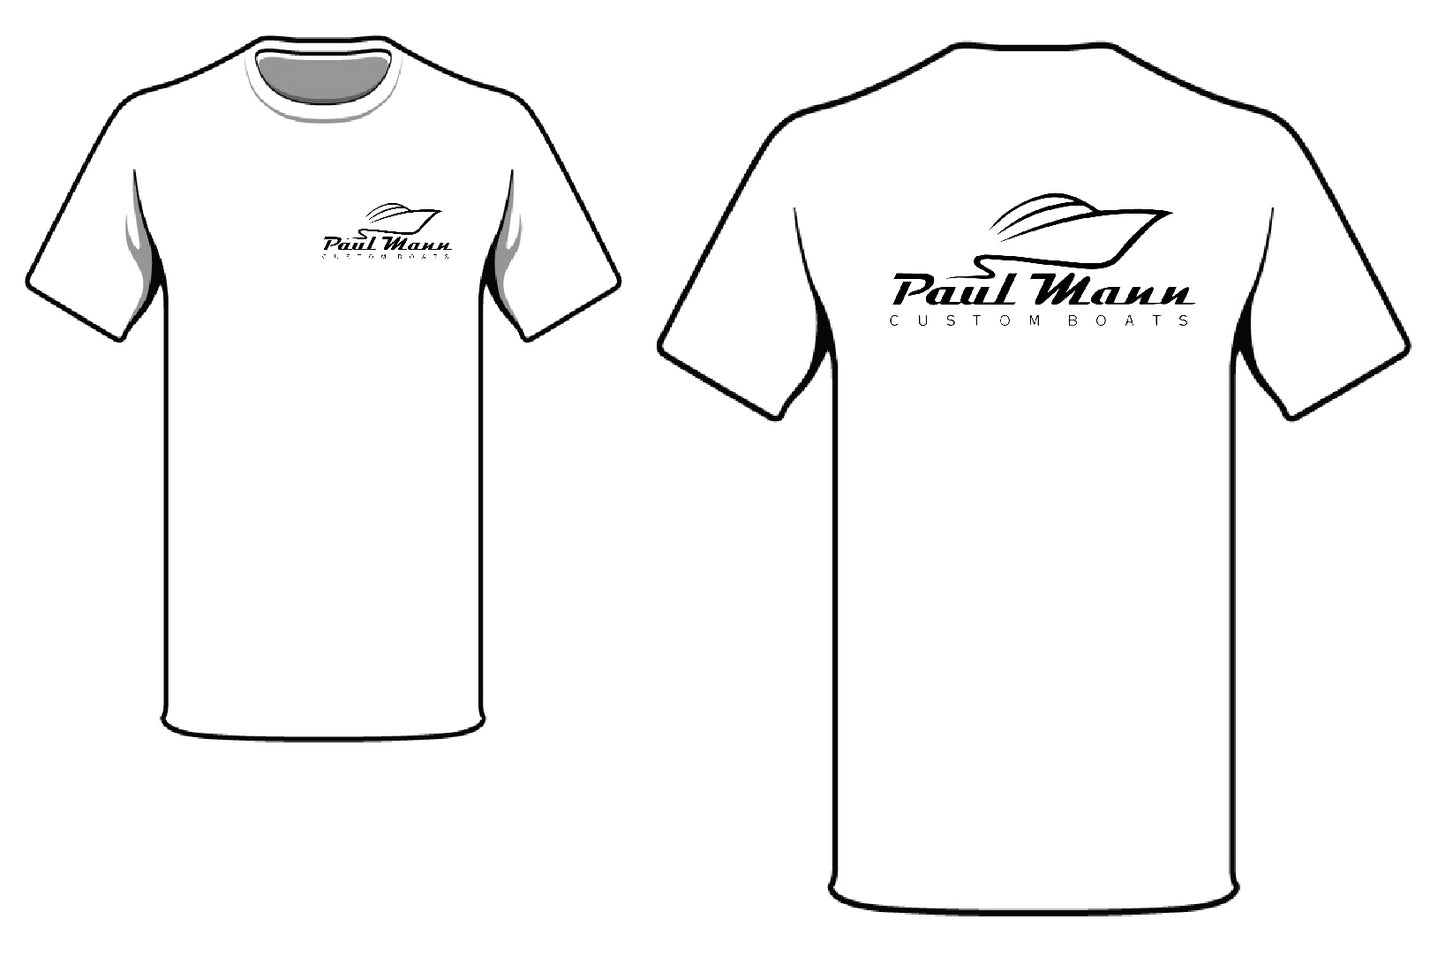 Paul Mann Boats T-Shirt